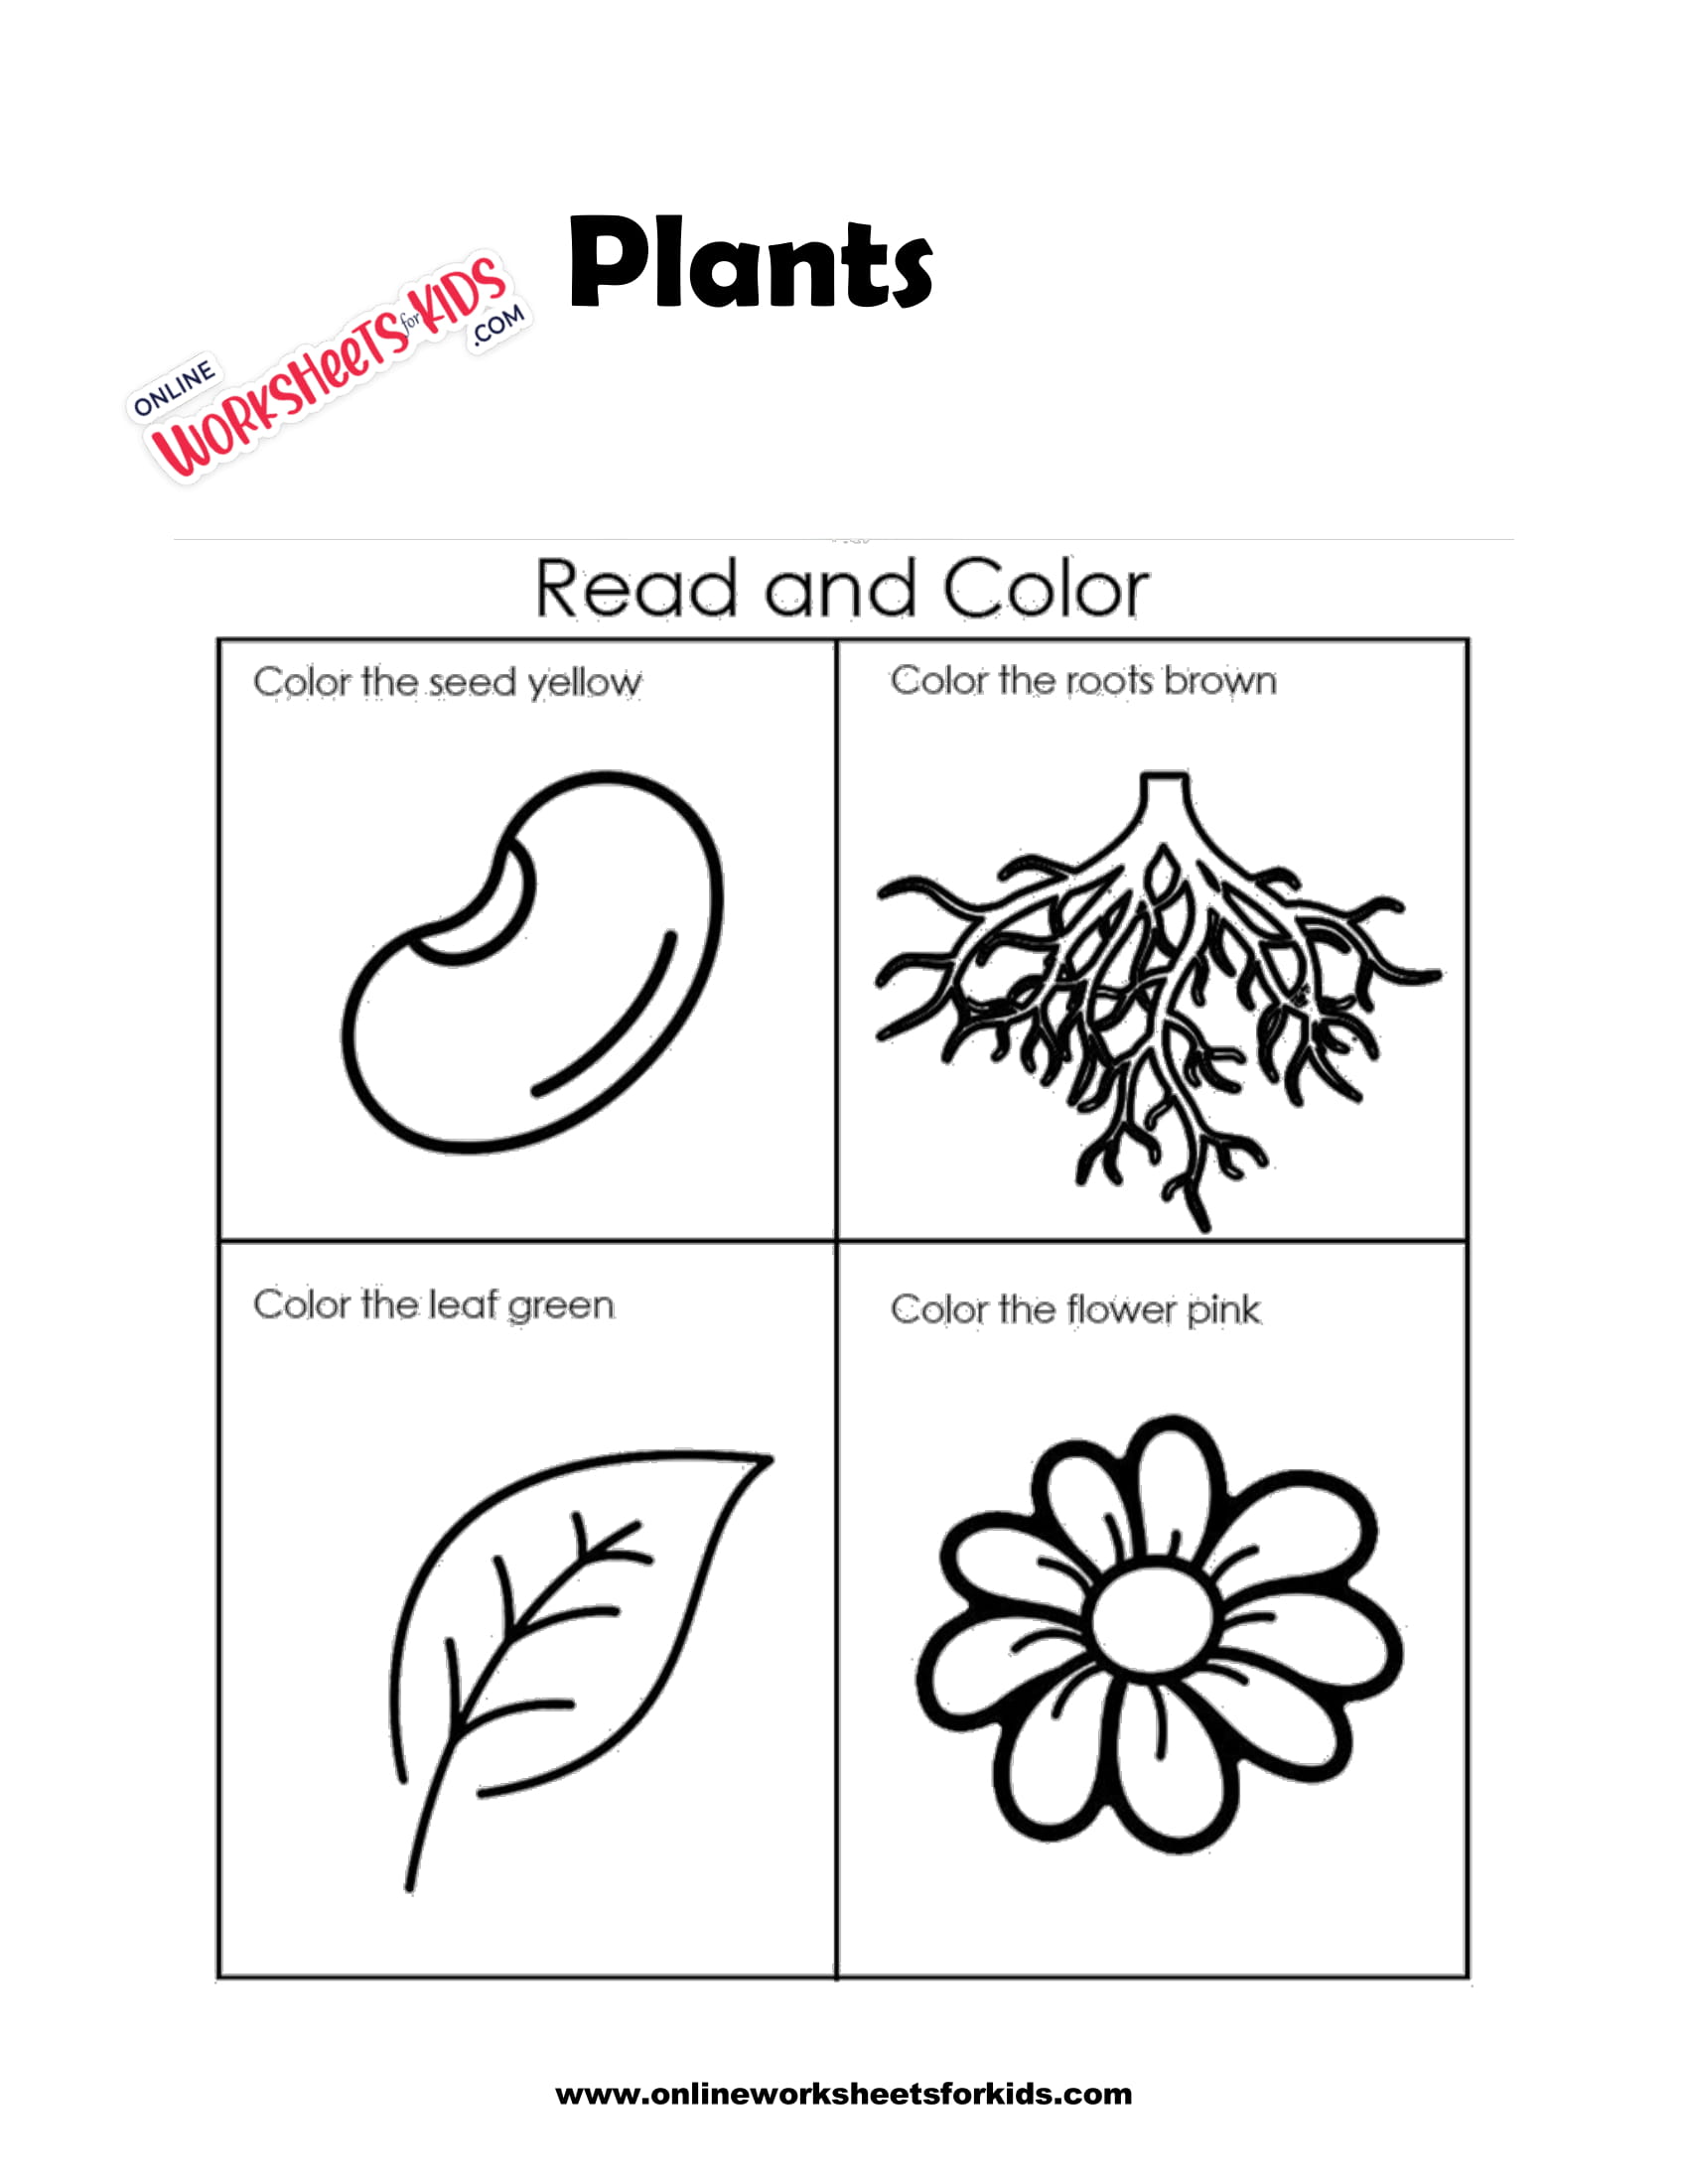 plants-worksheets-2